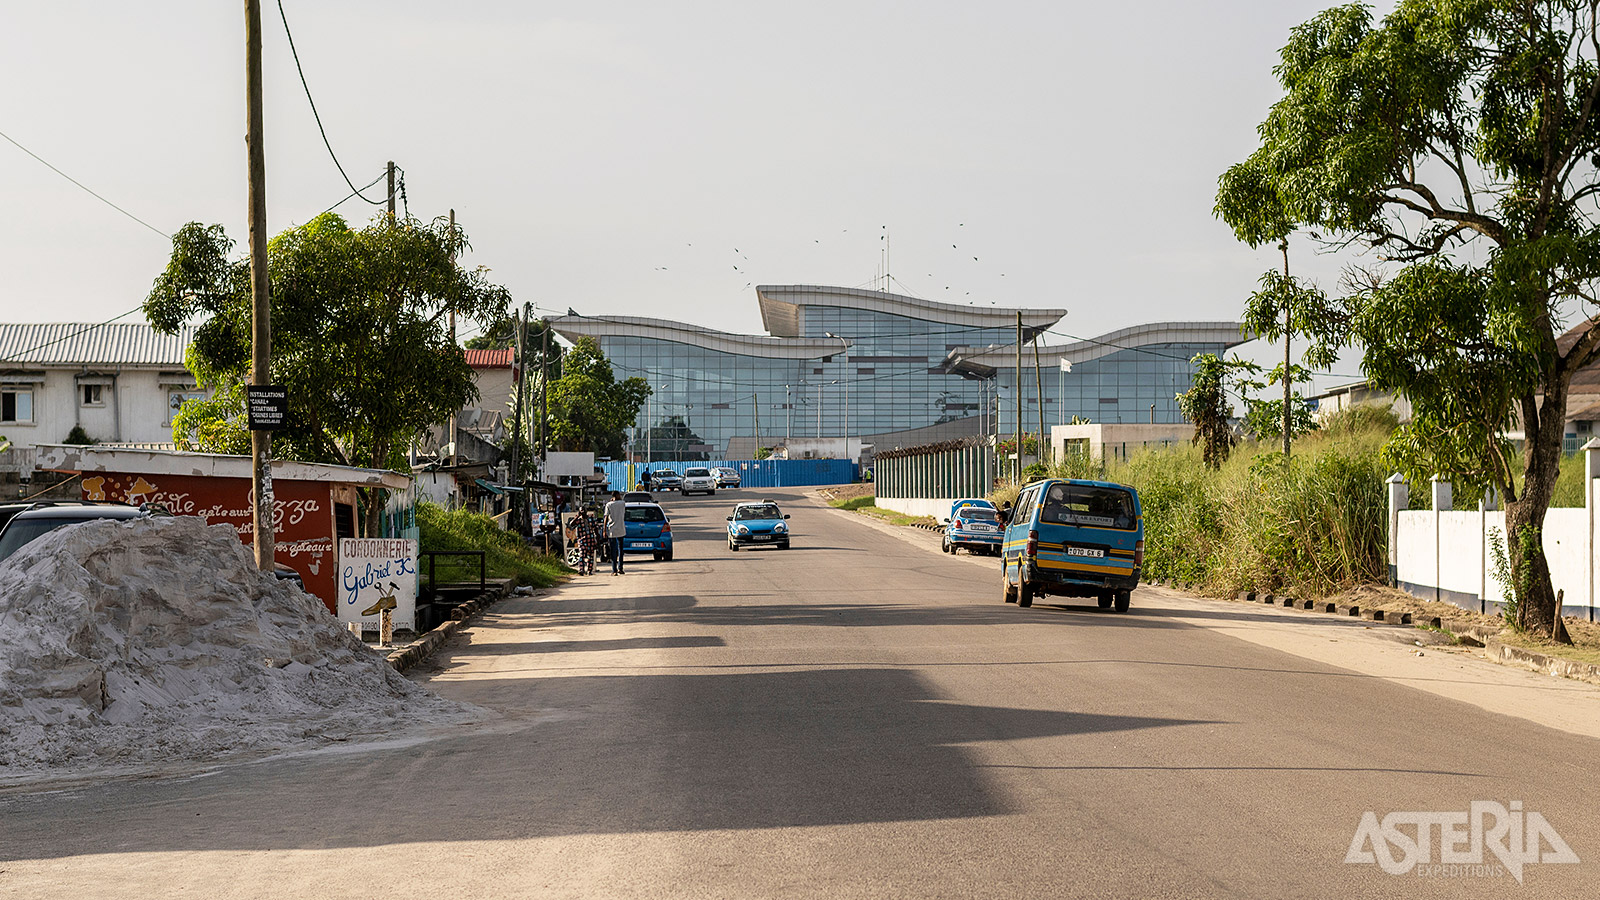 Welkom in Kinshasa, welkom in ’Kin la belle’ Welkom in Kinshasa, welkom in ’Kin la belle’